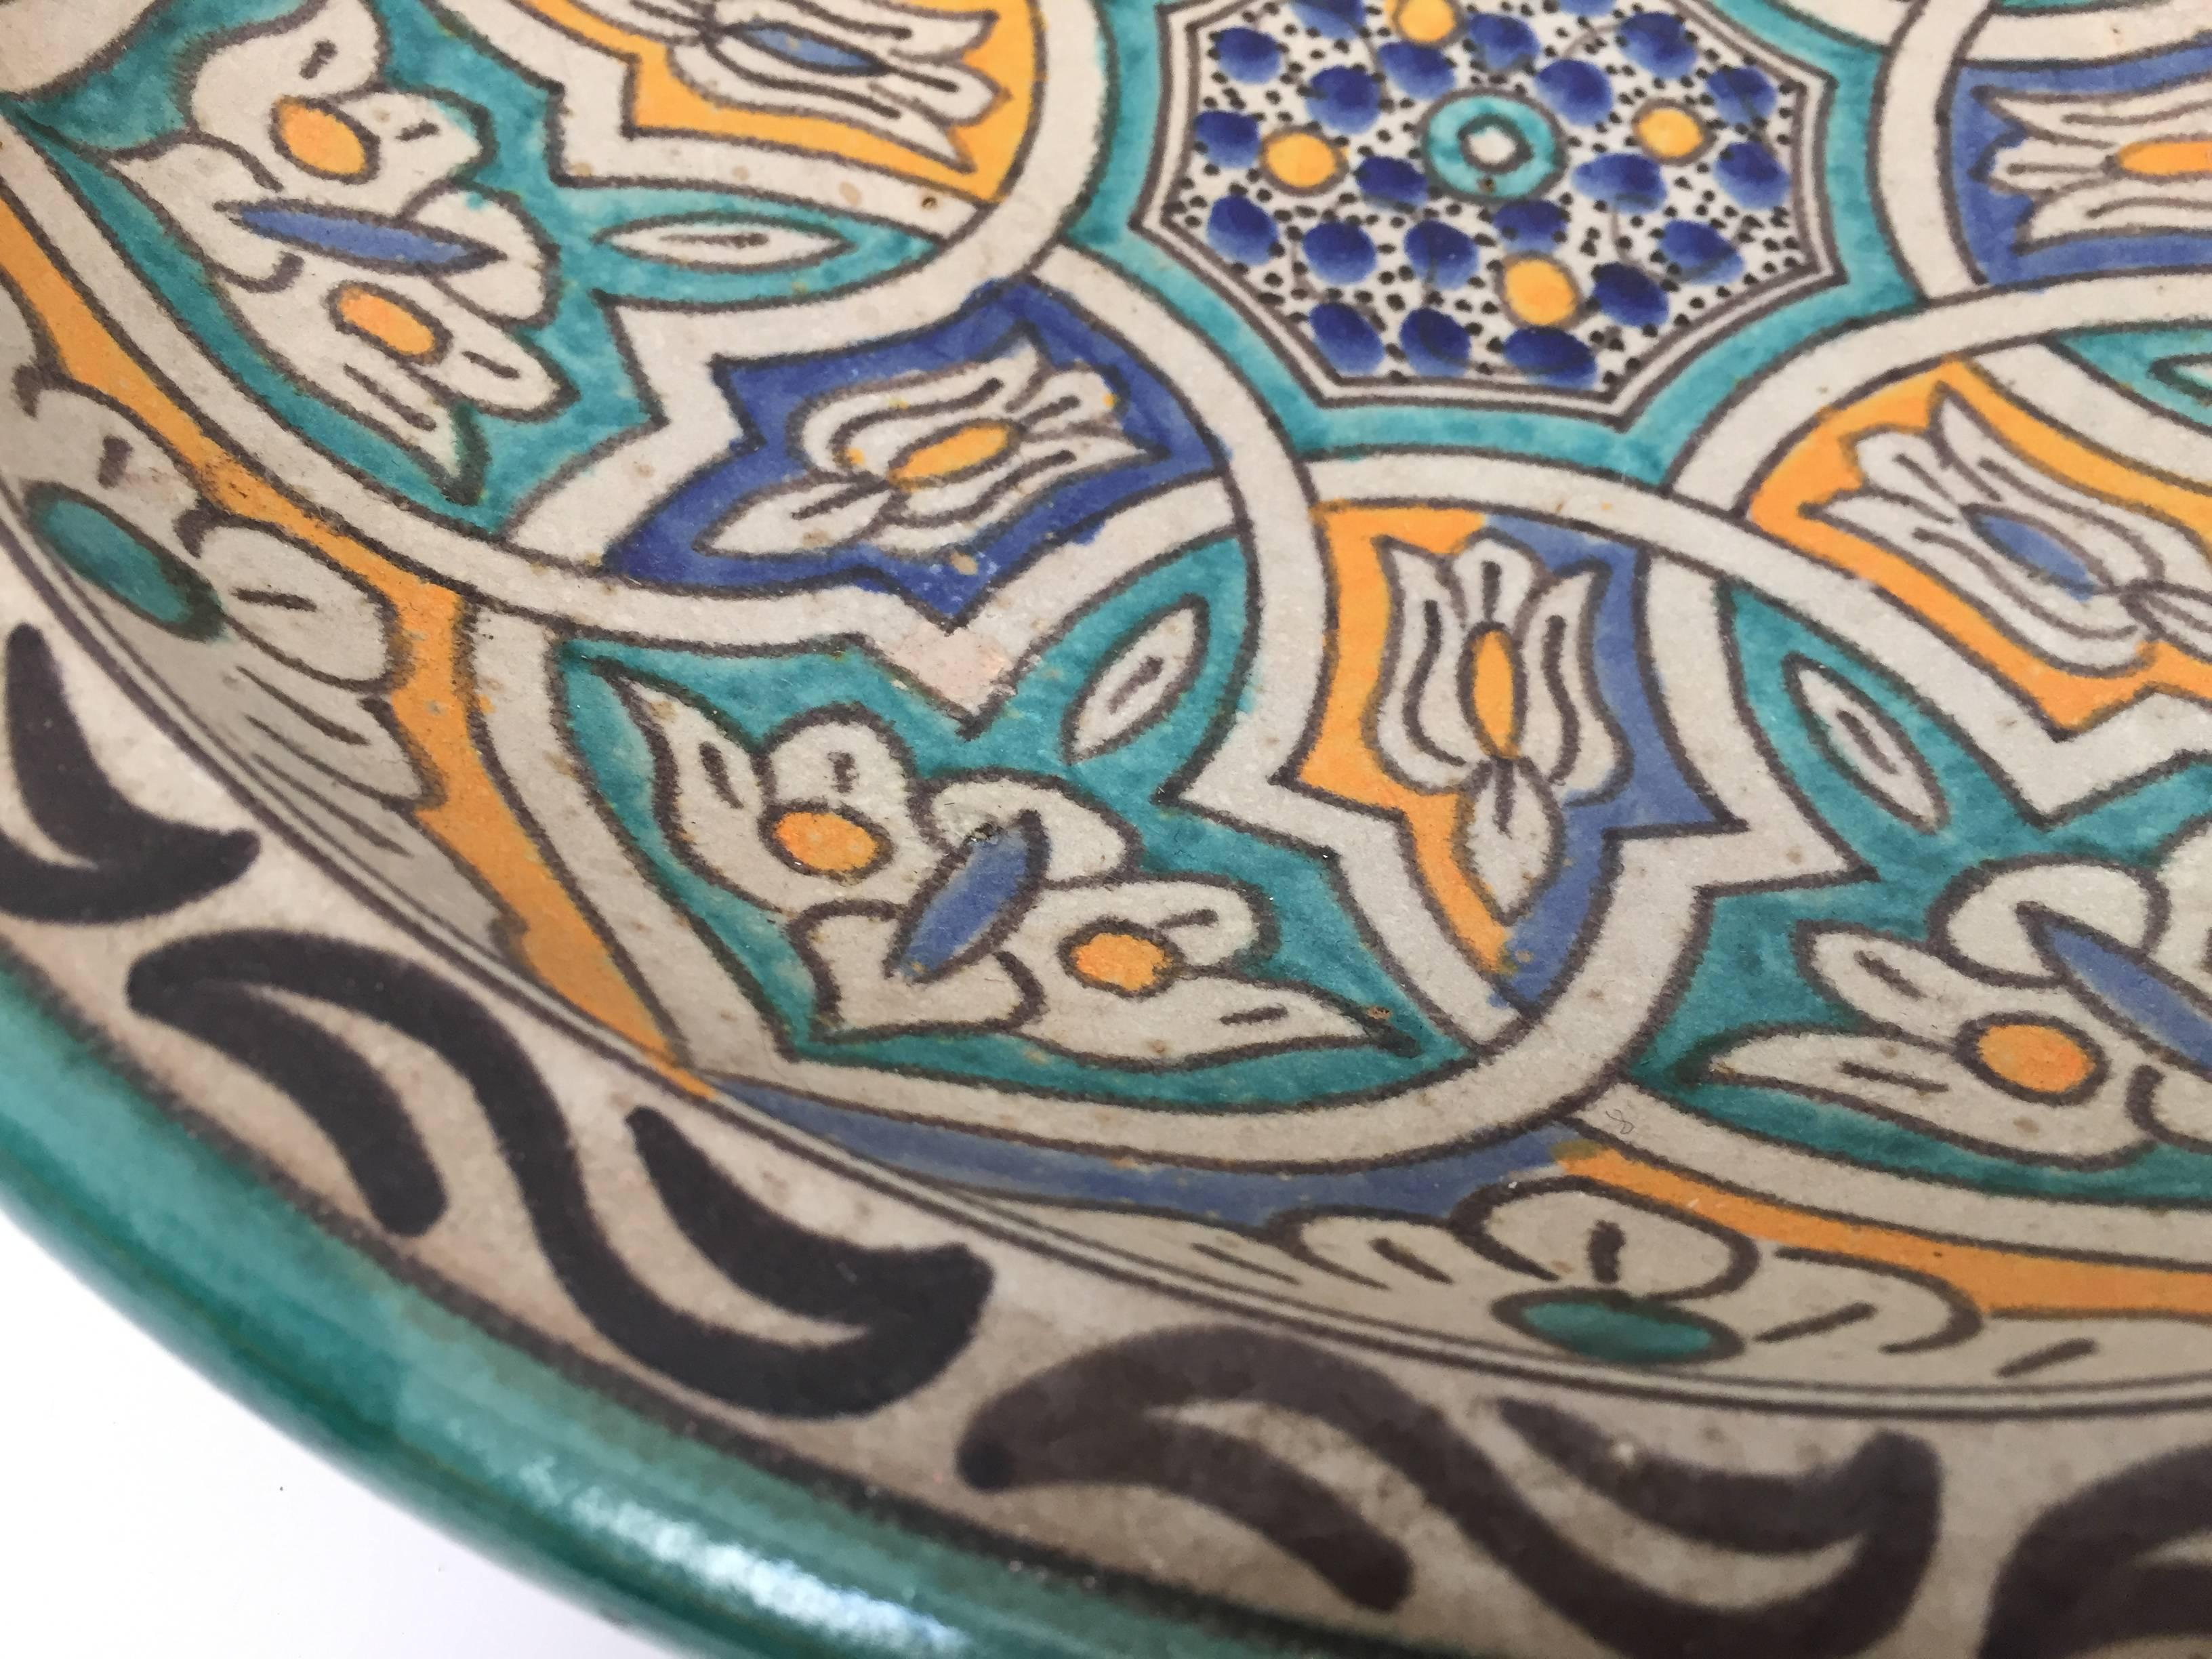 Moorish Moroccan Ceramic Bowl from Fez